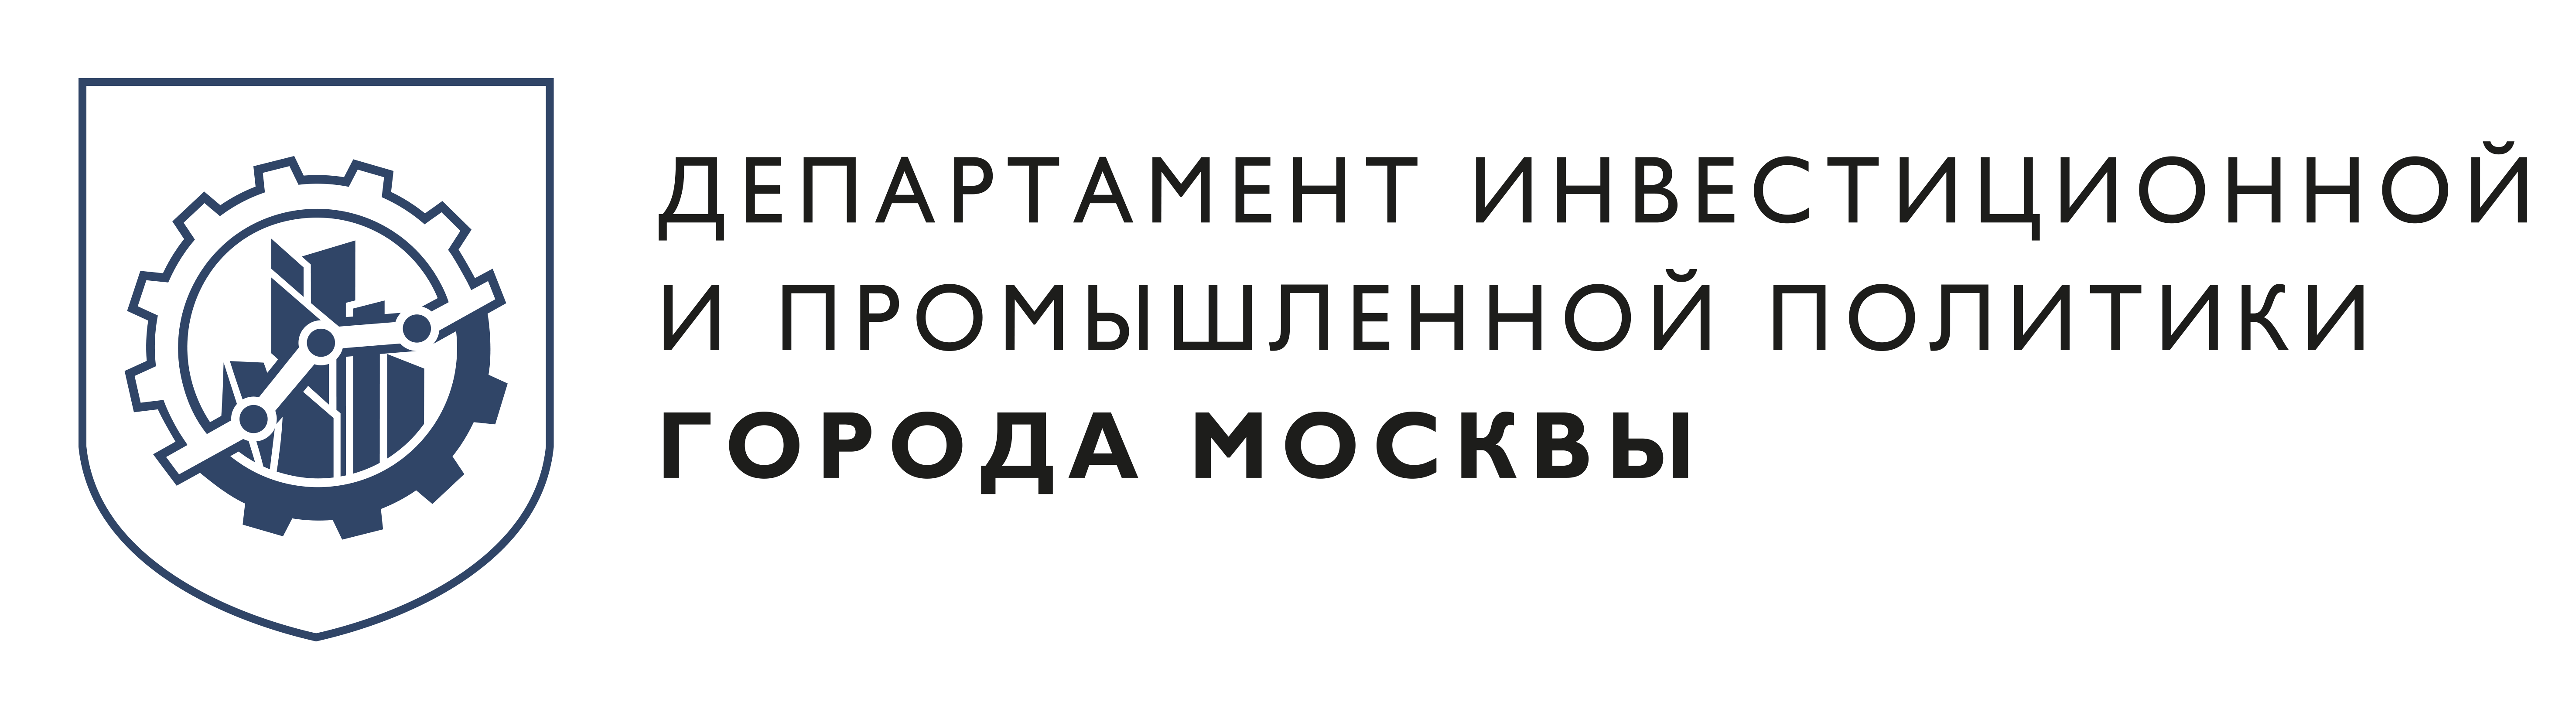 На Инвестиционном портале Москвы открыт раздел помощи бизнесу - фото 1